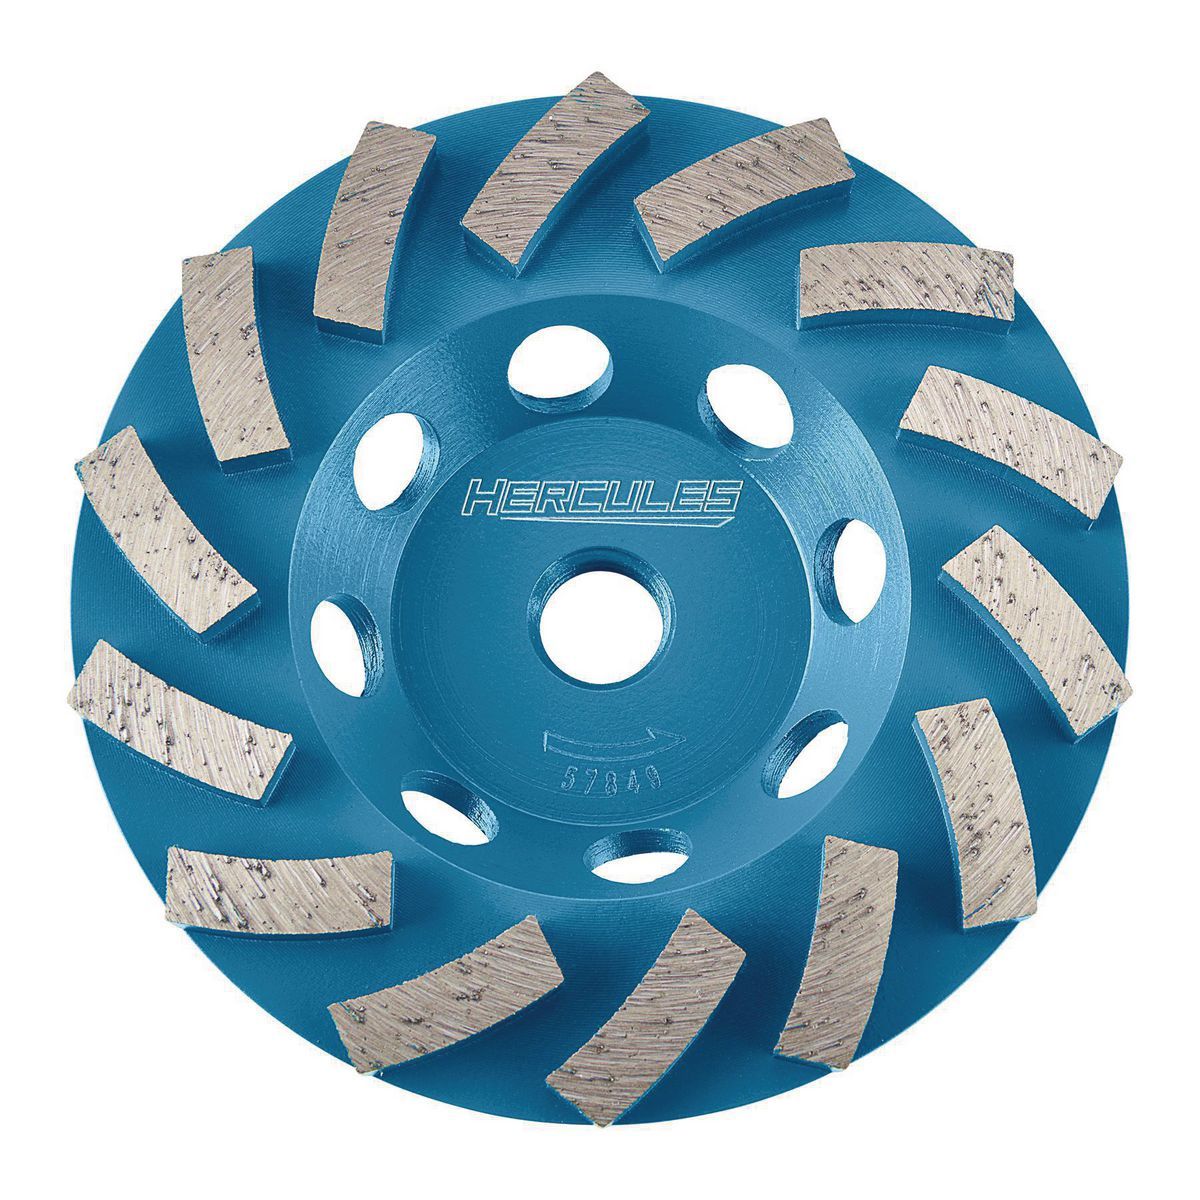 HERCULES 4-1/2 in. Diamond Segmented Turbo Cup Wheel